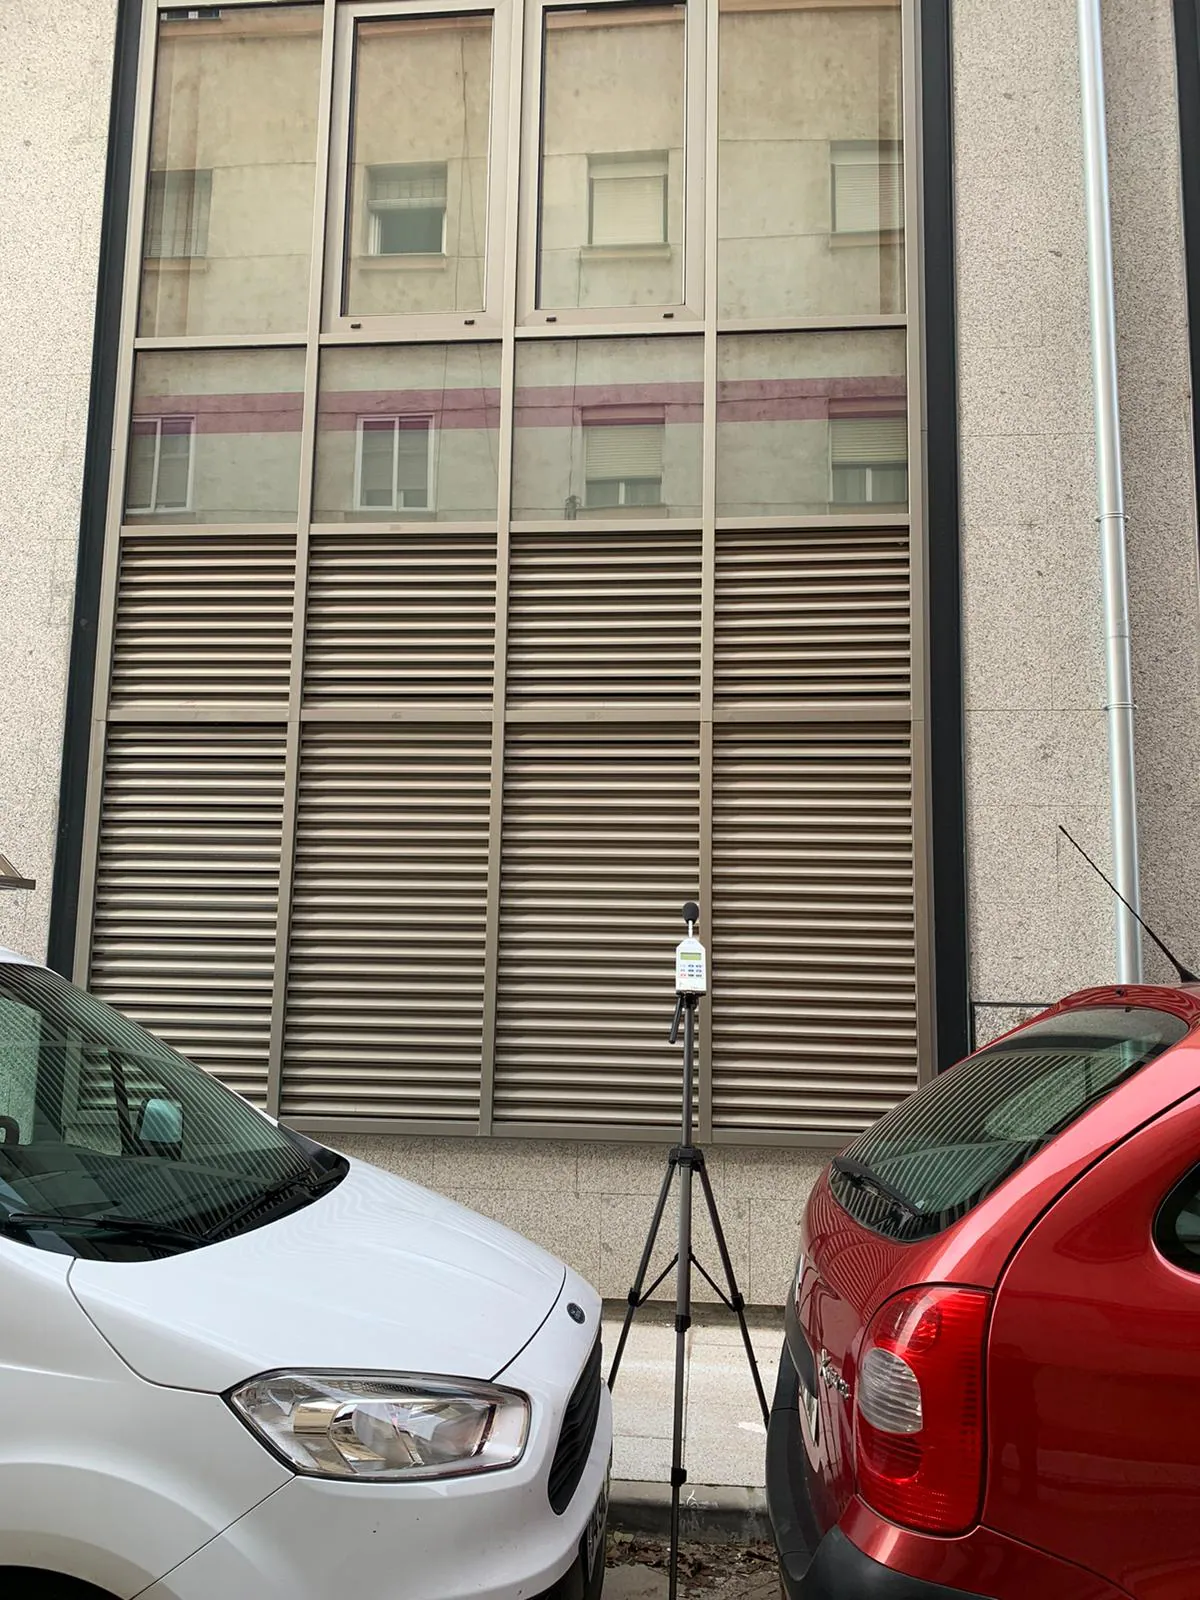 Nada cambia cinco meses después: los vecinos de la calle Astorga ven «intolerables» los niveles de ruido de las instalaciones de Renfe